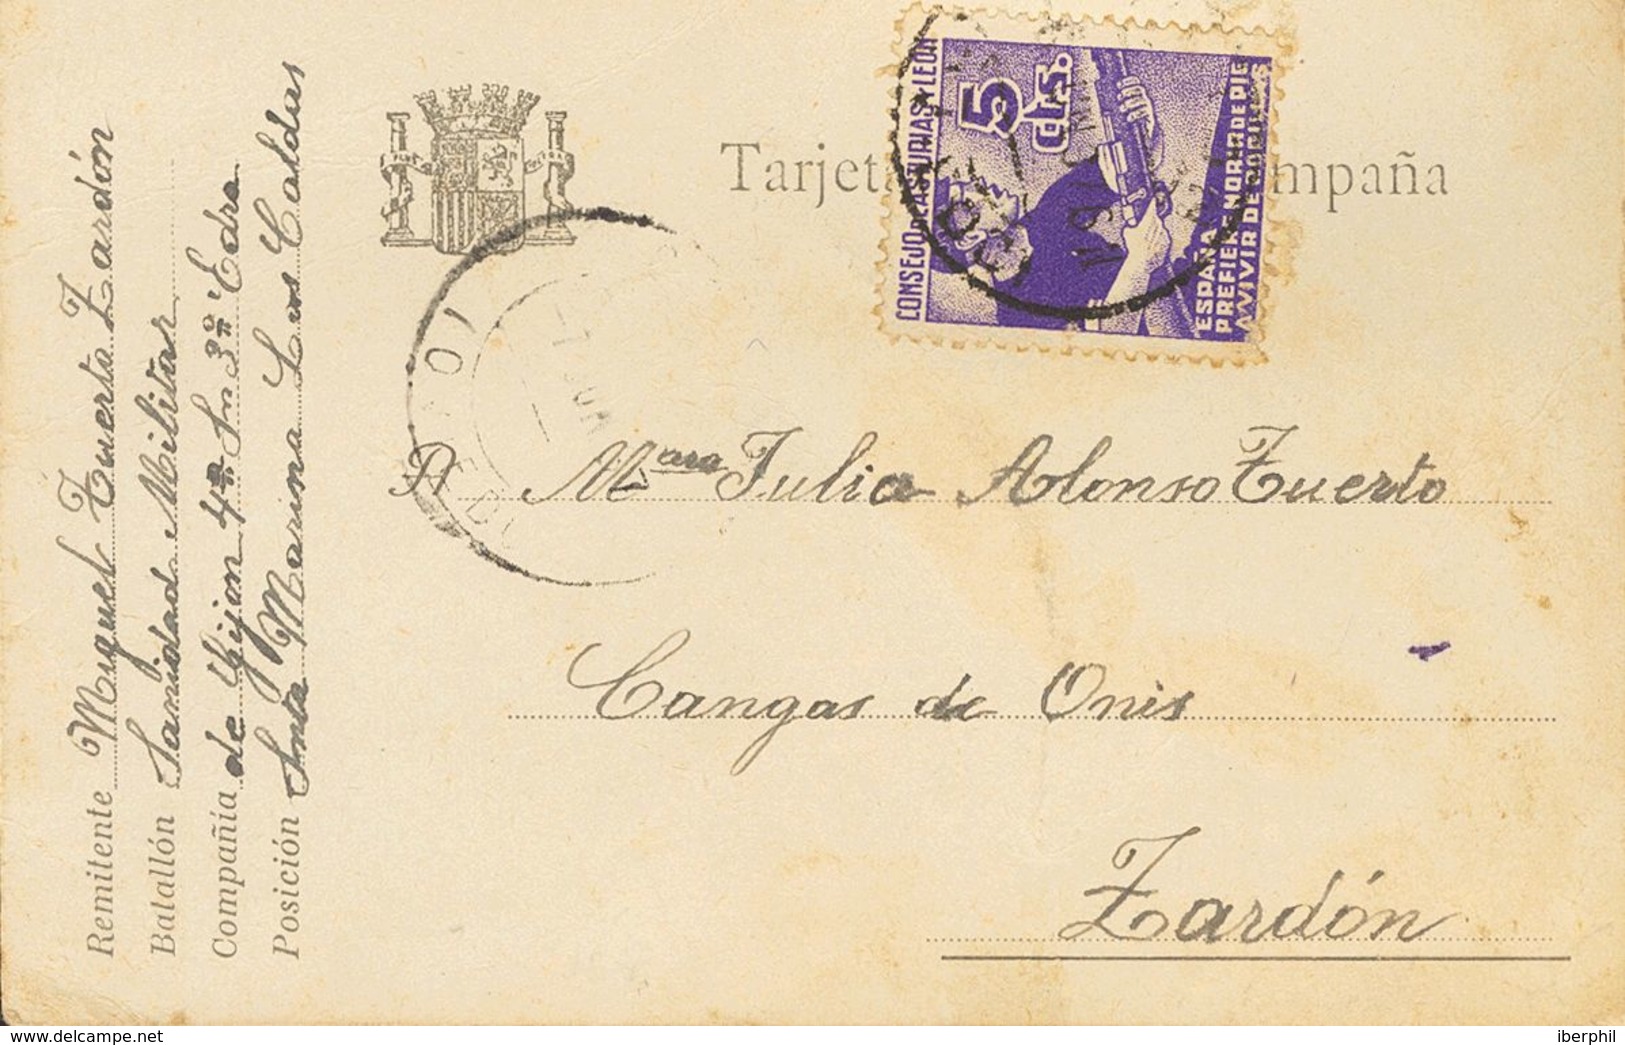 España. Asturias Y León. Sobre 2. 1937. 5 Cts Violeta. Tarjeta Postal De Campaña De LAS CALDAS A ZARDON. MAGNIFICA. - Asturias & Leon